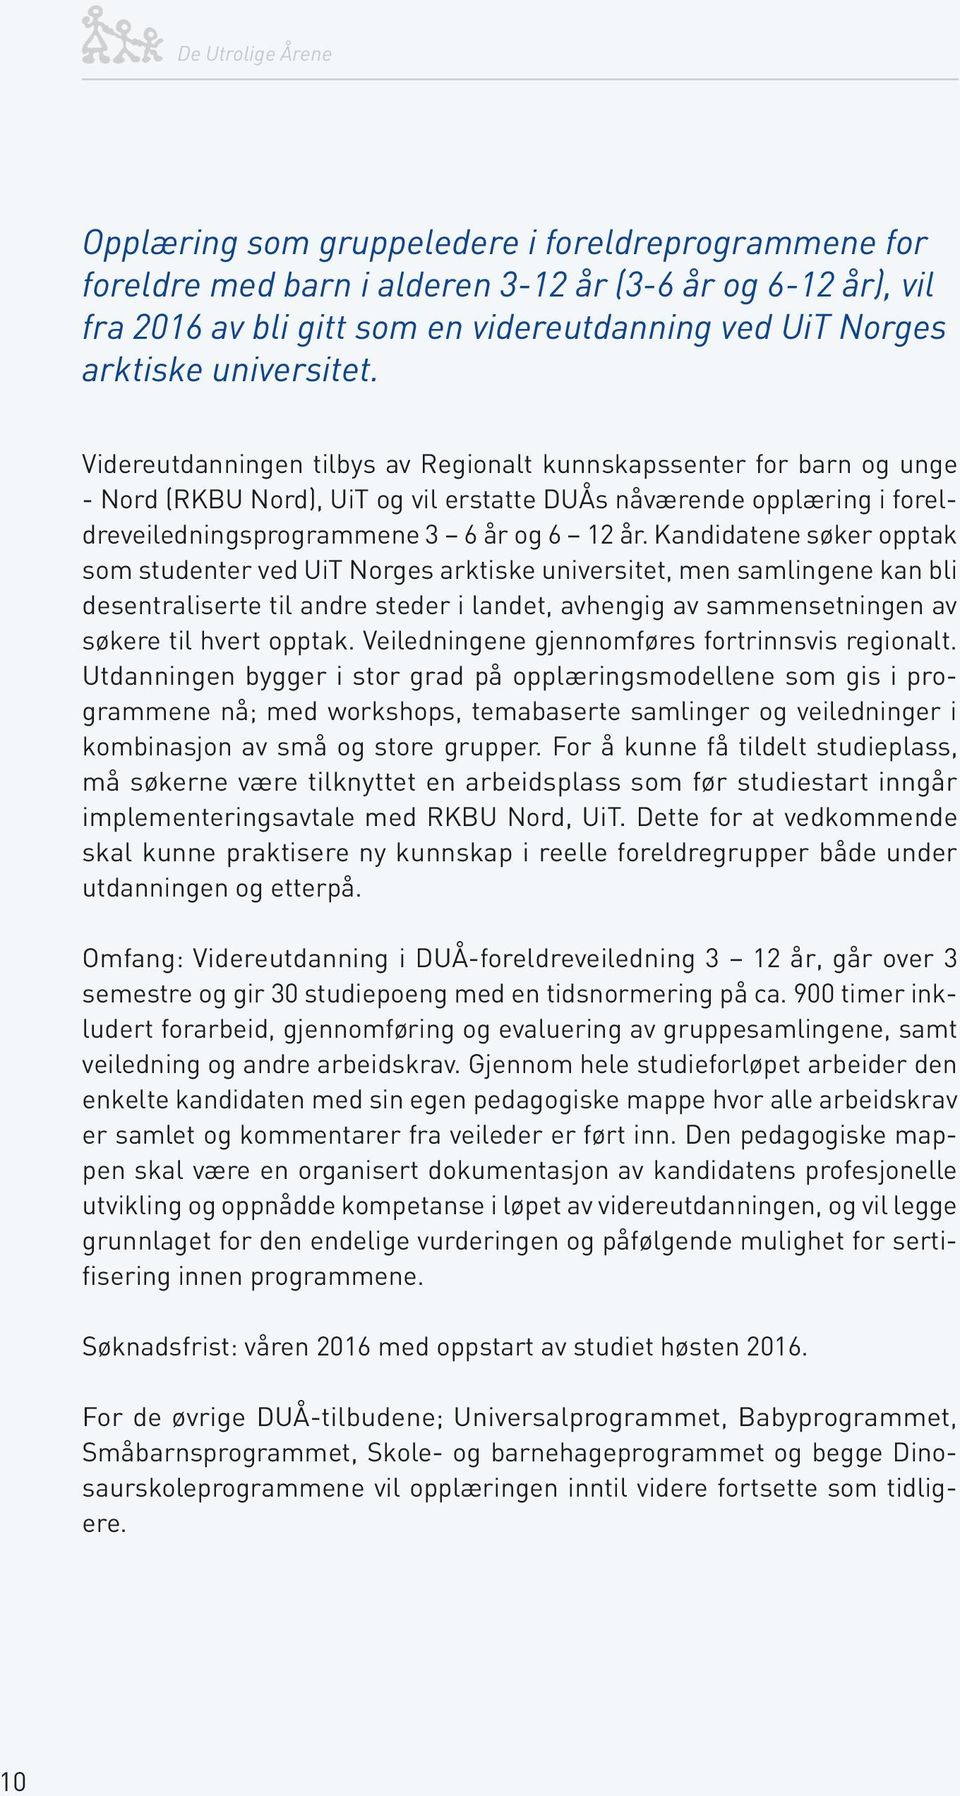 Kandidatene søker opptak som studenter ved UiT Norges arktiske universitet, men samlingene kan bli desentraliserte til andre steder i landet, avhengig av sammensetningen av søkere til hvert opptak.